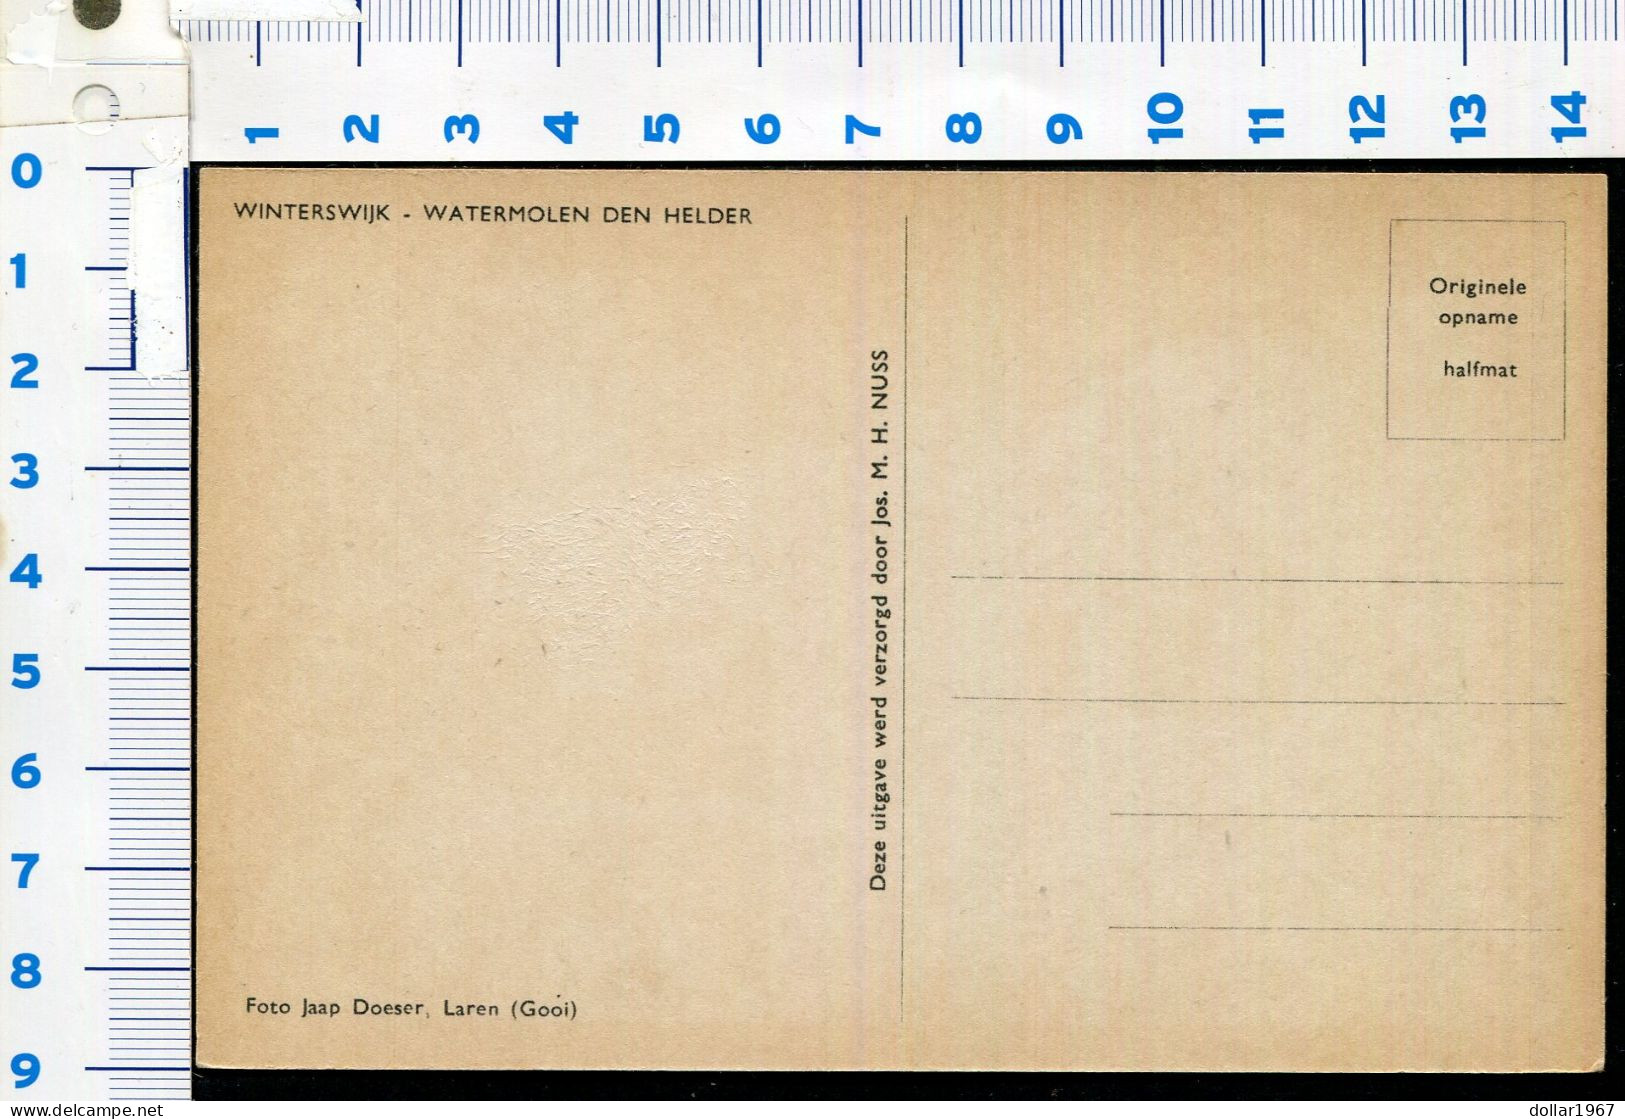 WINTERSWIJK. WATERMOLEN - DEN HELDER - Not Used + 1950 - 2 Scans For Condition.(Originalscan !!) - Winterswijk